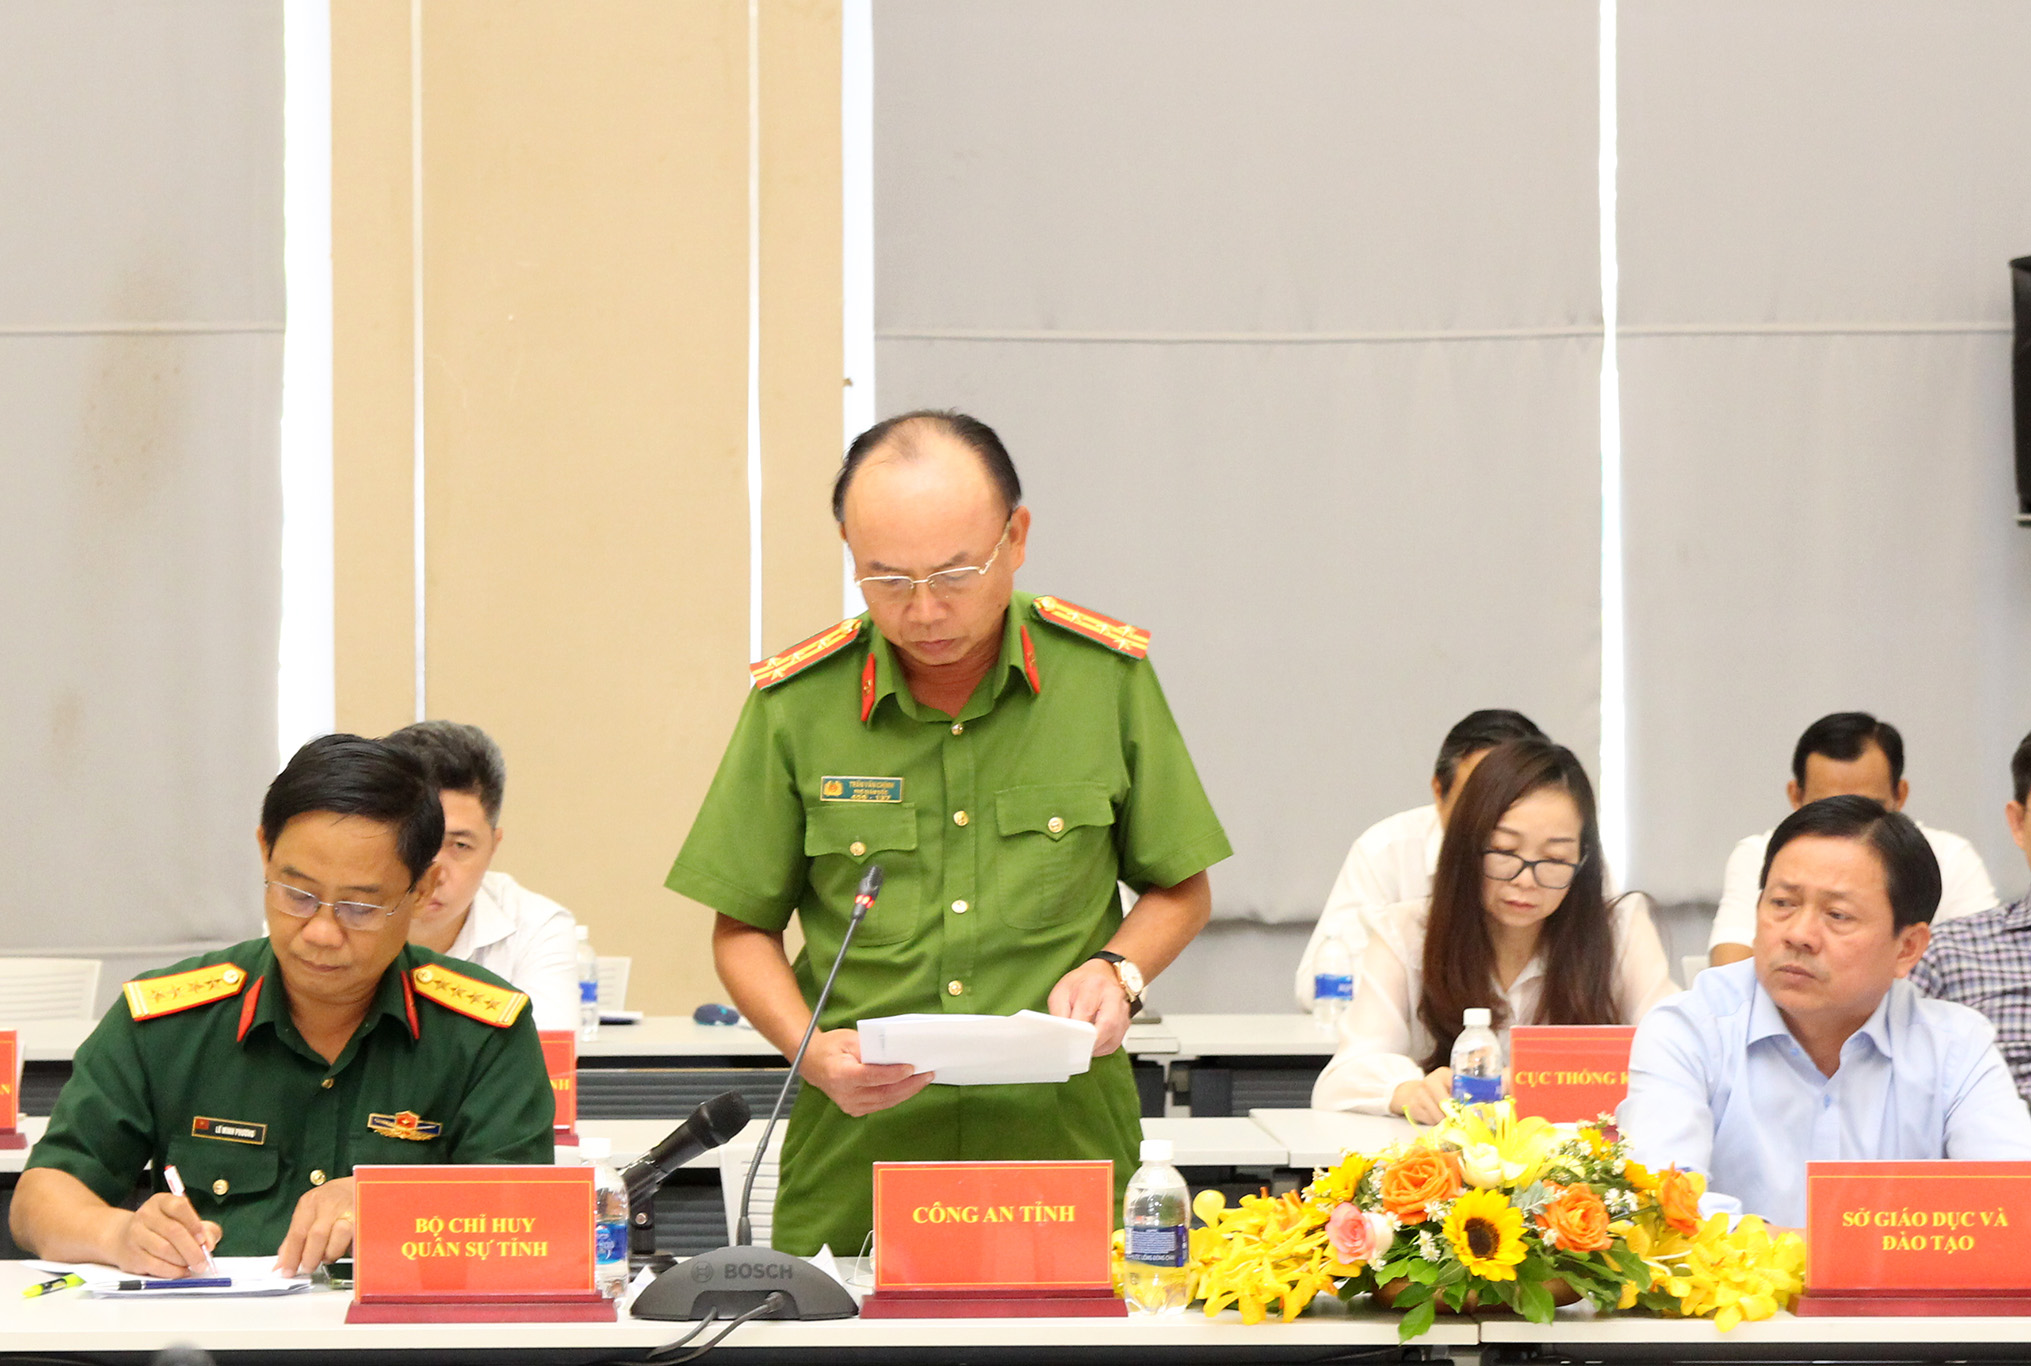 Đồng chí Trần Văn Chính, Phó Giám đốc Công an tỉnh phát biểu tại buổi họp báo (Ảnh: H.Hào)